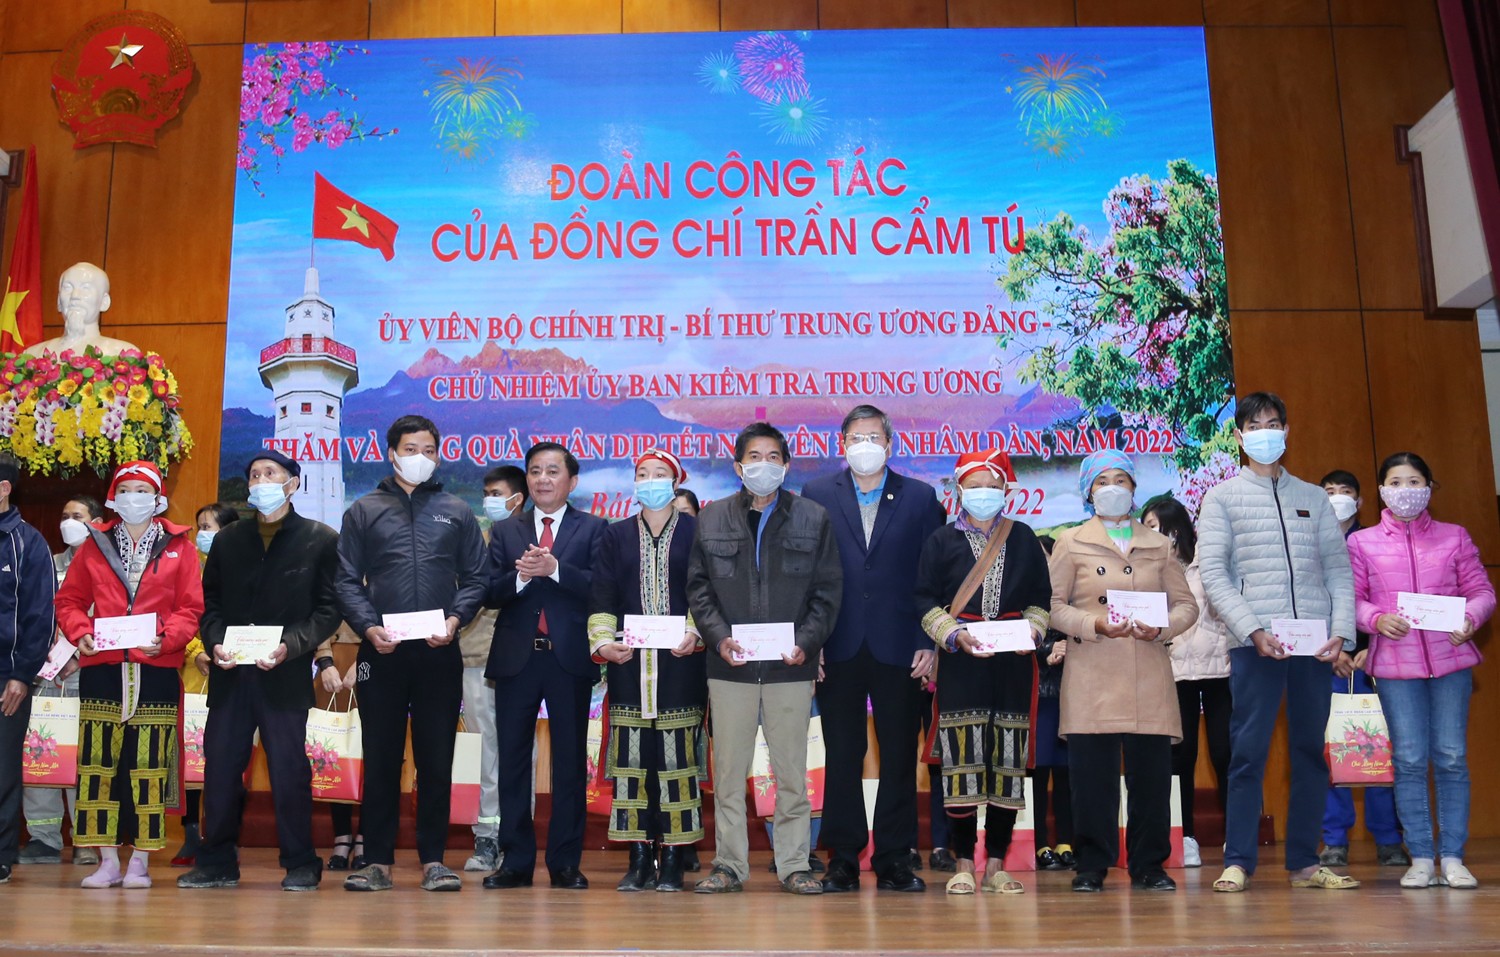 Ông Trần Cẩm Tú cùng đoàn công tác Tổng Liên đoàn Lao động Việt nam tặng quà gia đình chính sách và công nhân, lao động. Ảnh: CTV.